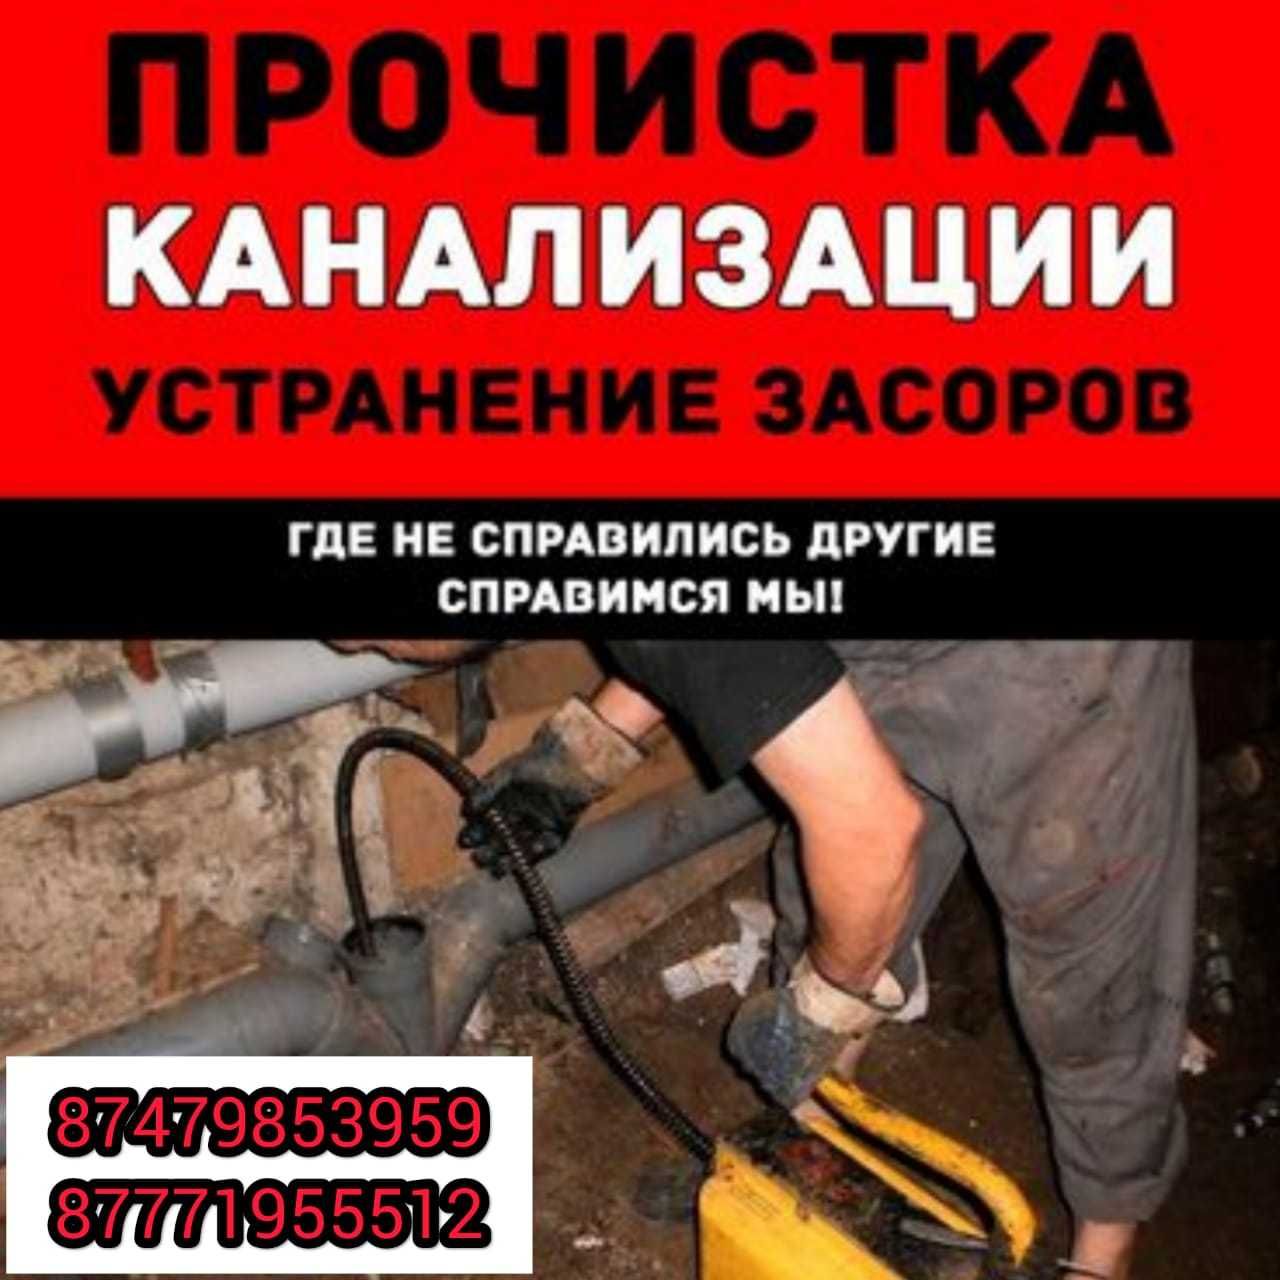 Чистка канализации аппаратом Уральск